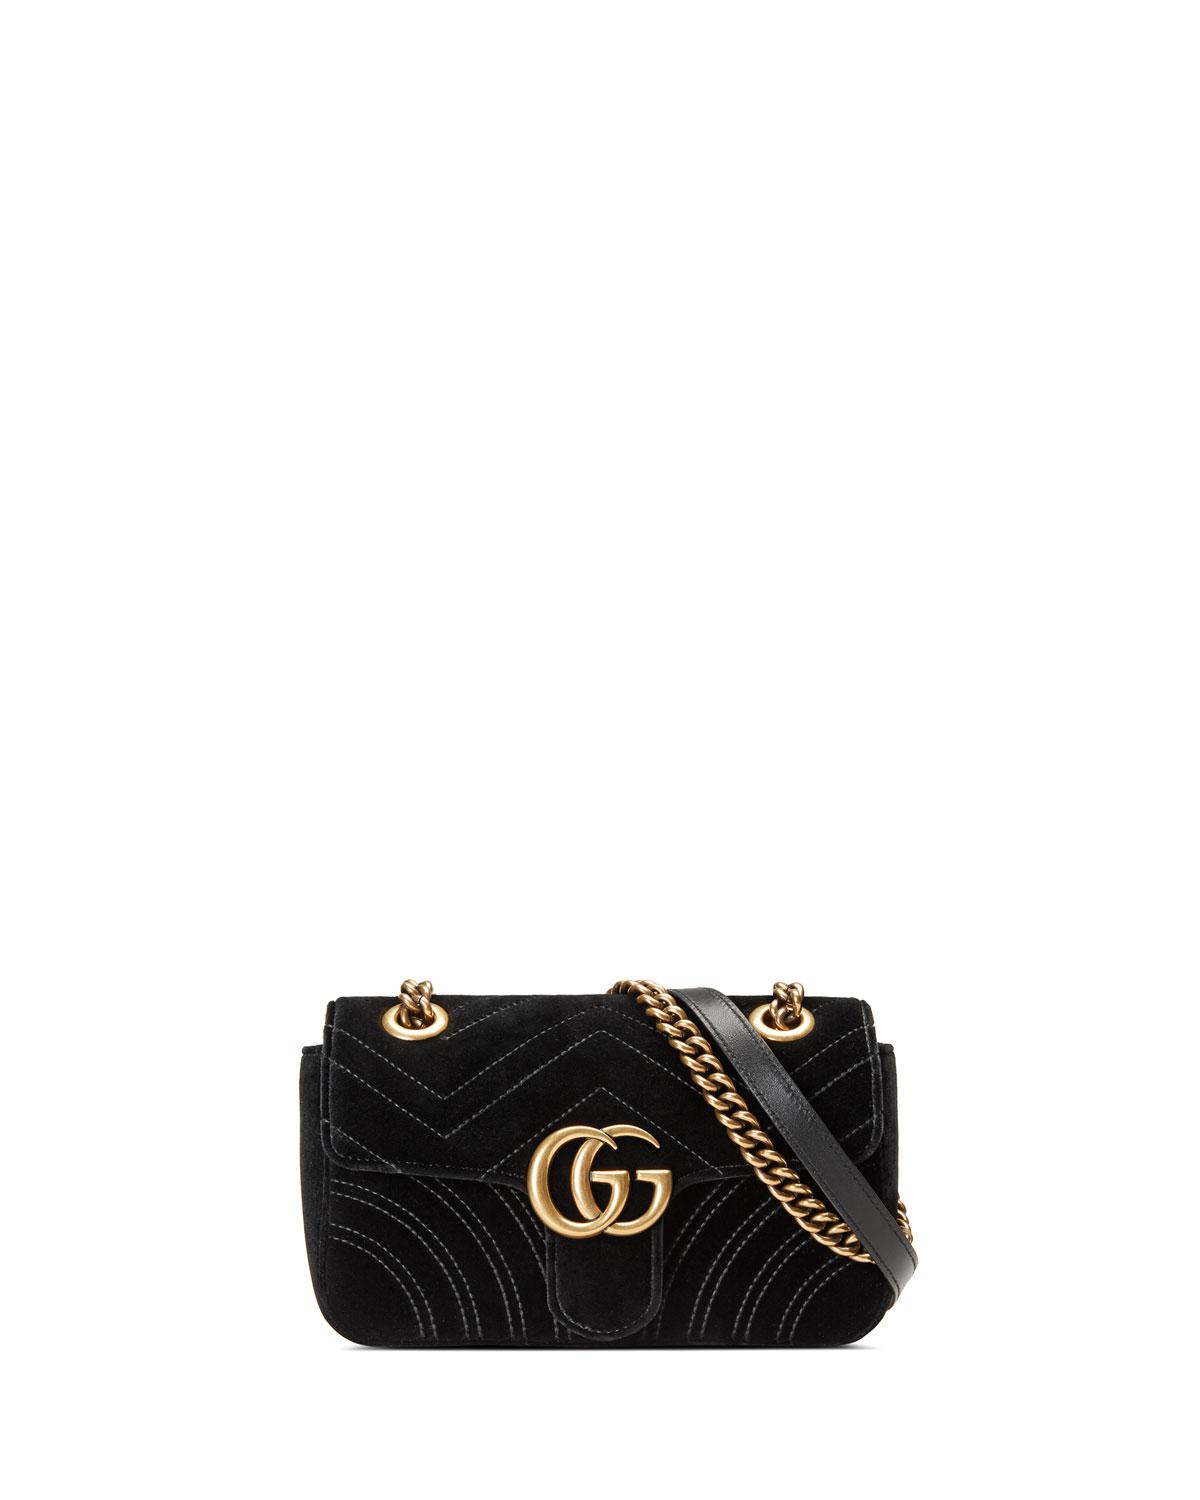 Gucci GG Marmont Velvet Mini Shoulder Bag in Black - Save 16% - Lyst